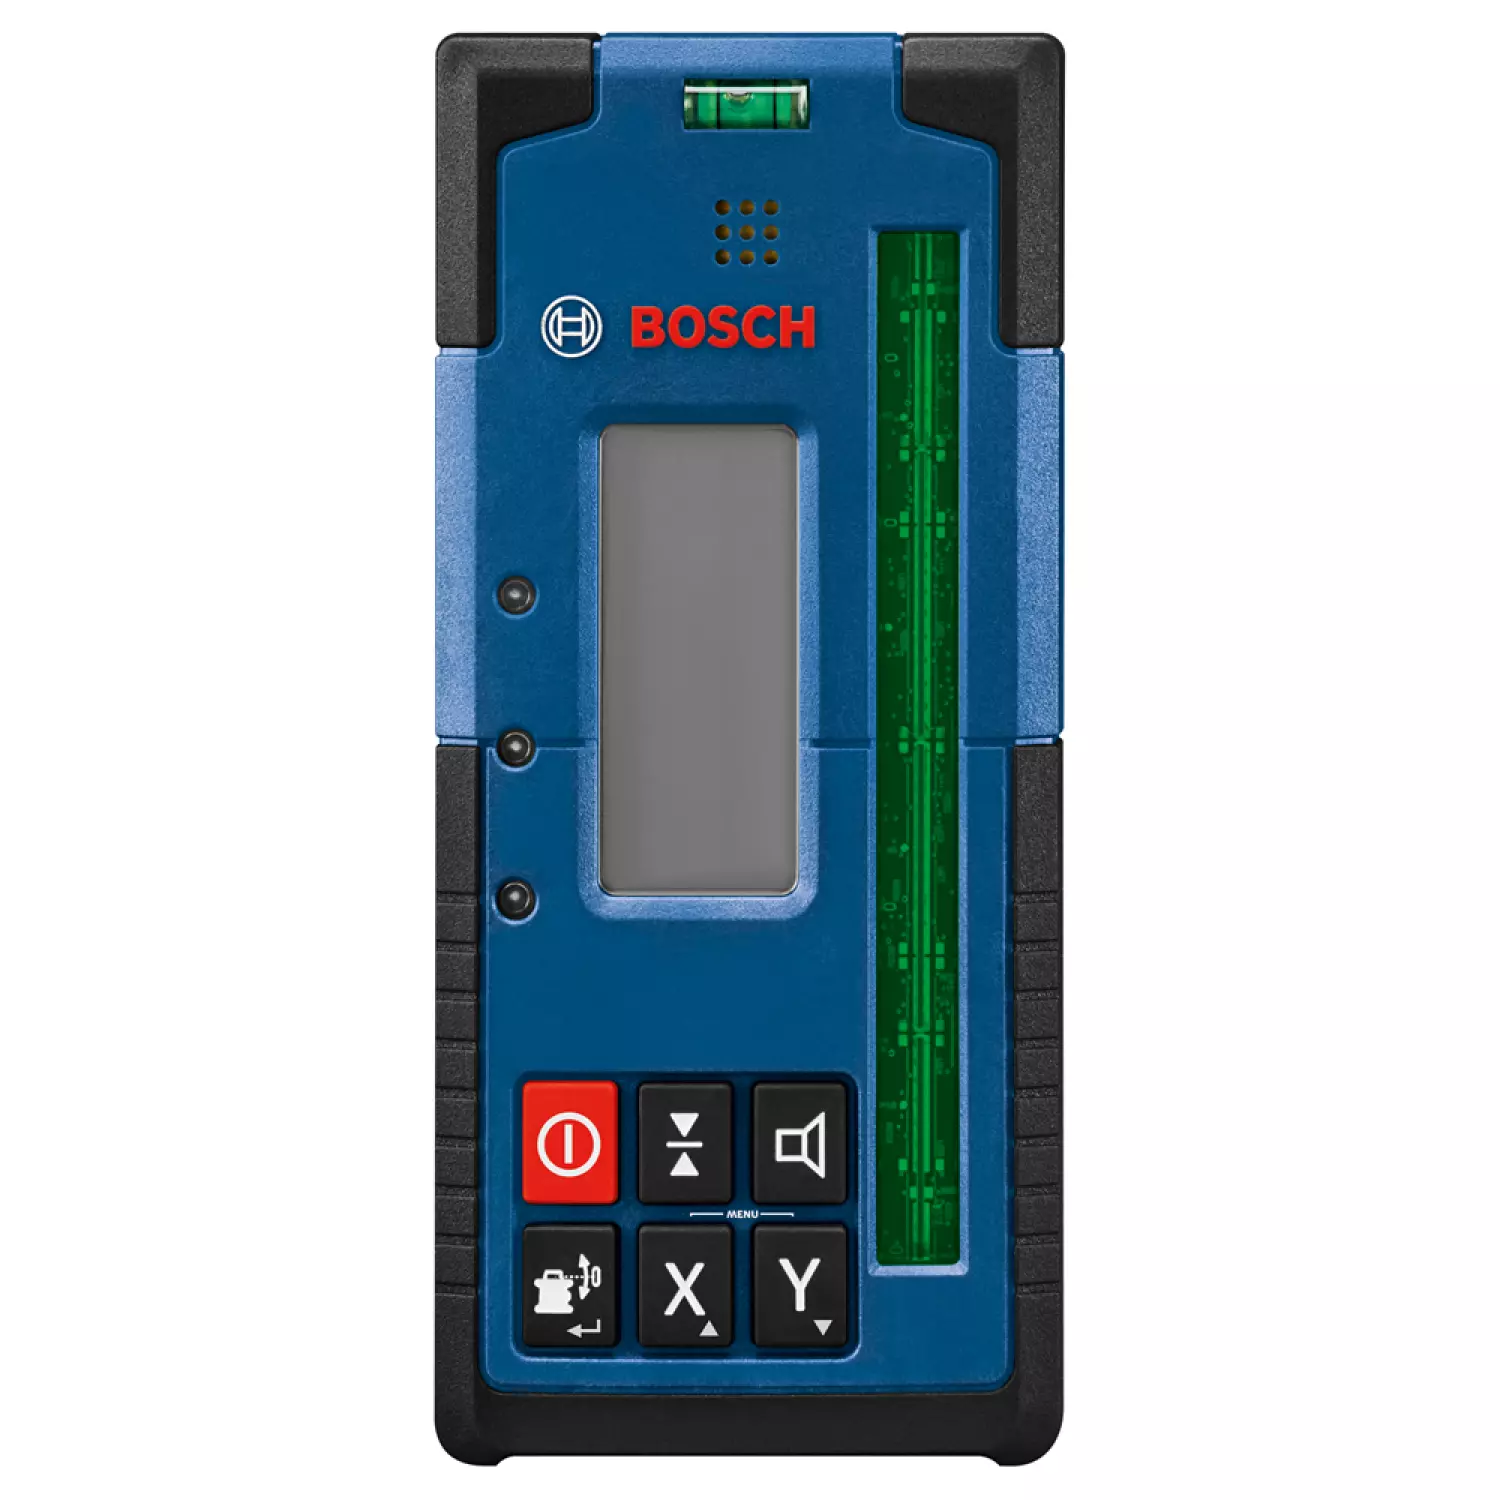 Bosch LR 65 G Récepteur laser incl support RB 61